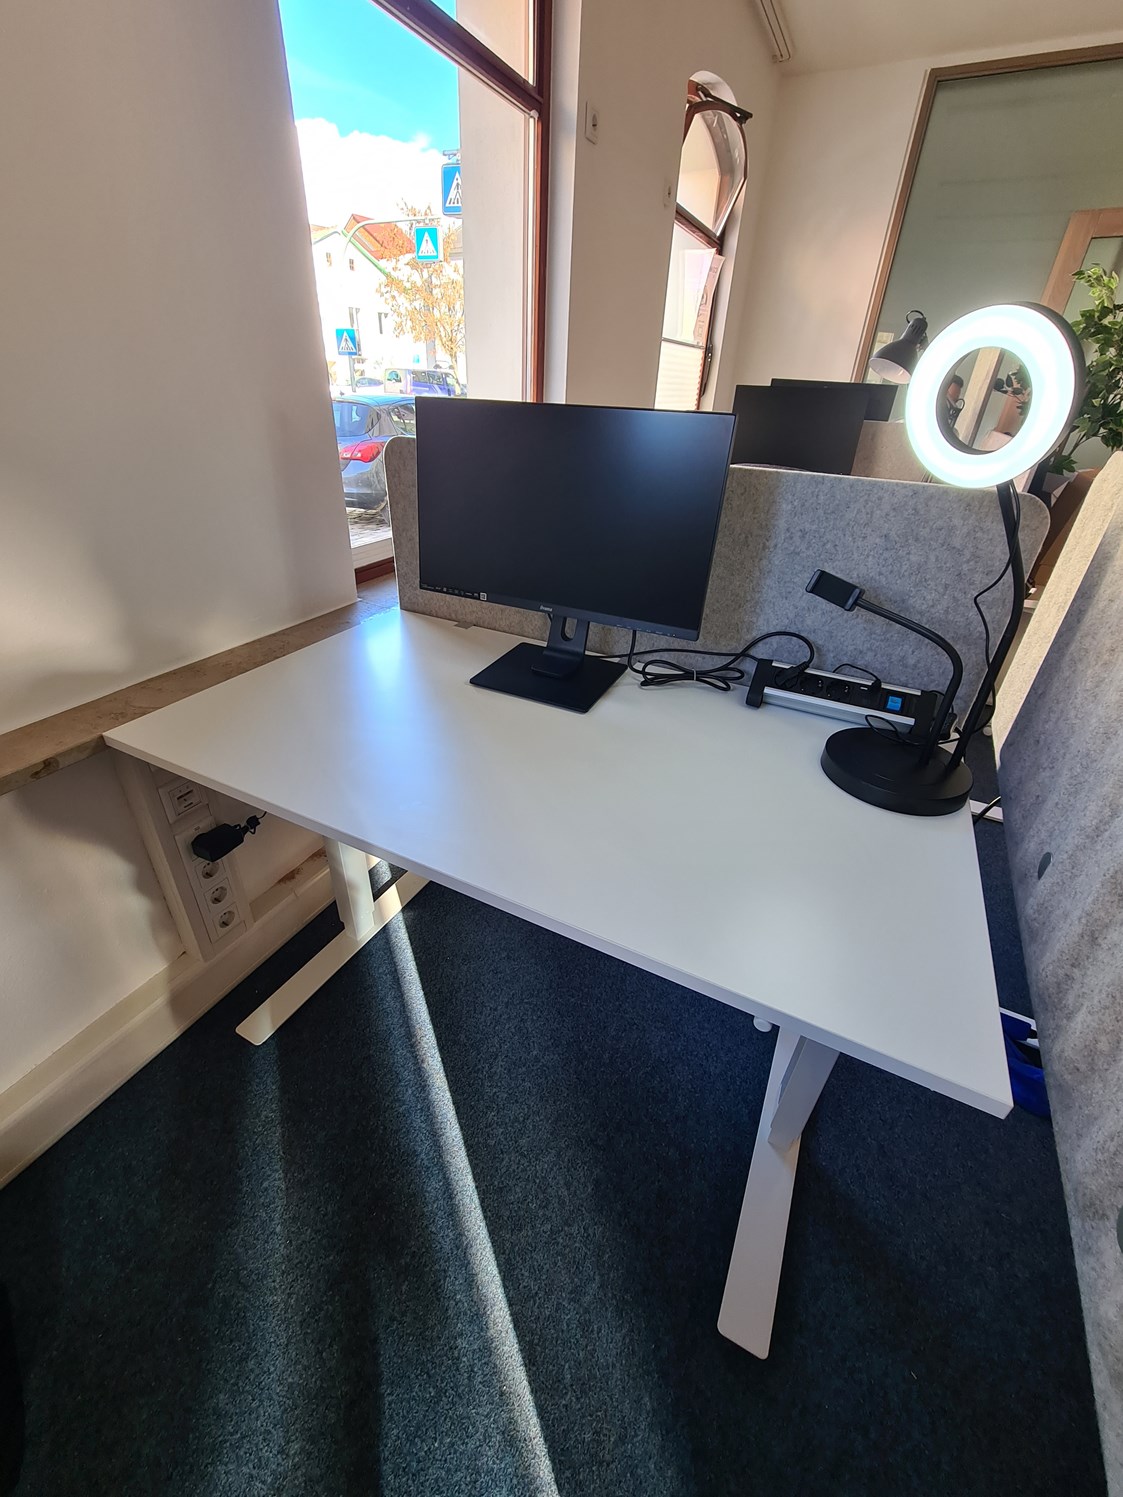 Coworking Space: Ausstattung Arbeitsplatz:
- Höhenverstellbarer Tisch
- 24" Monitor
- Schreibtischlampe - SPACS Coworking